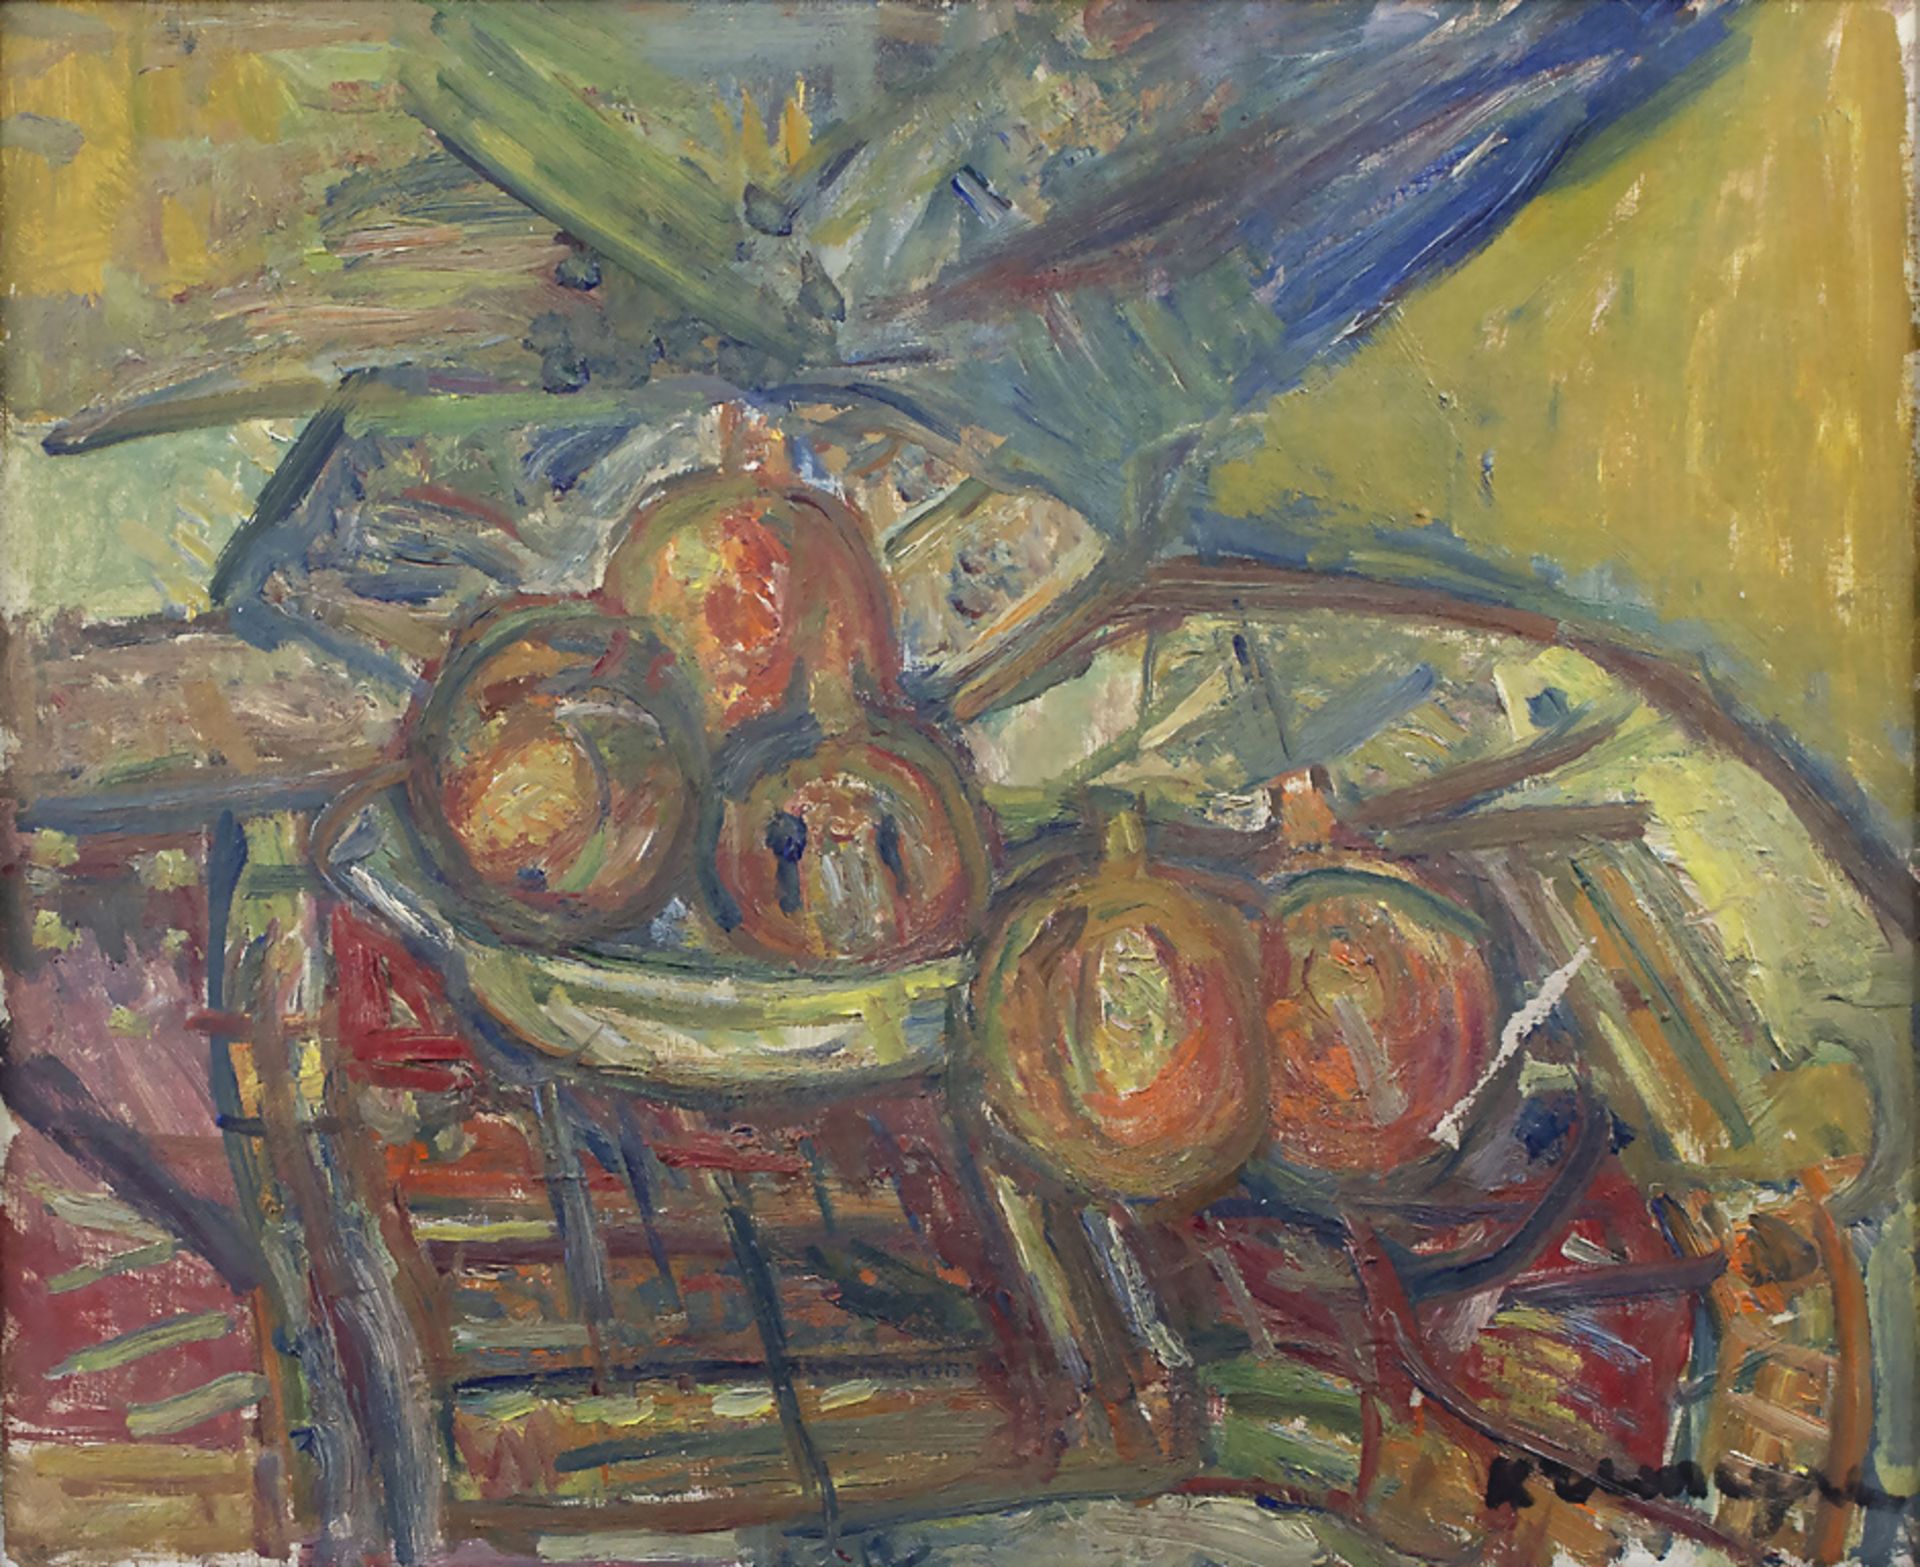 Pinchus KREMEGNE (1890-1981), 'Stillleben mit Zitrusfrüchten' / 'Still life with citrus fruits'